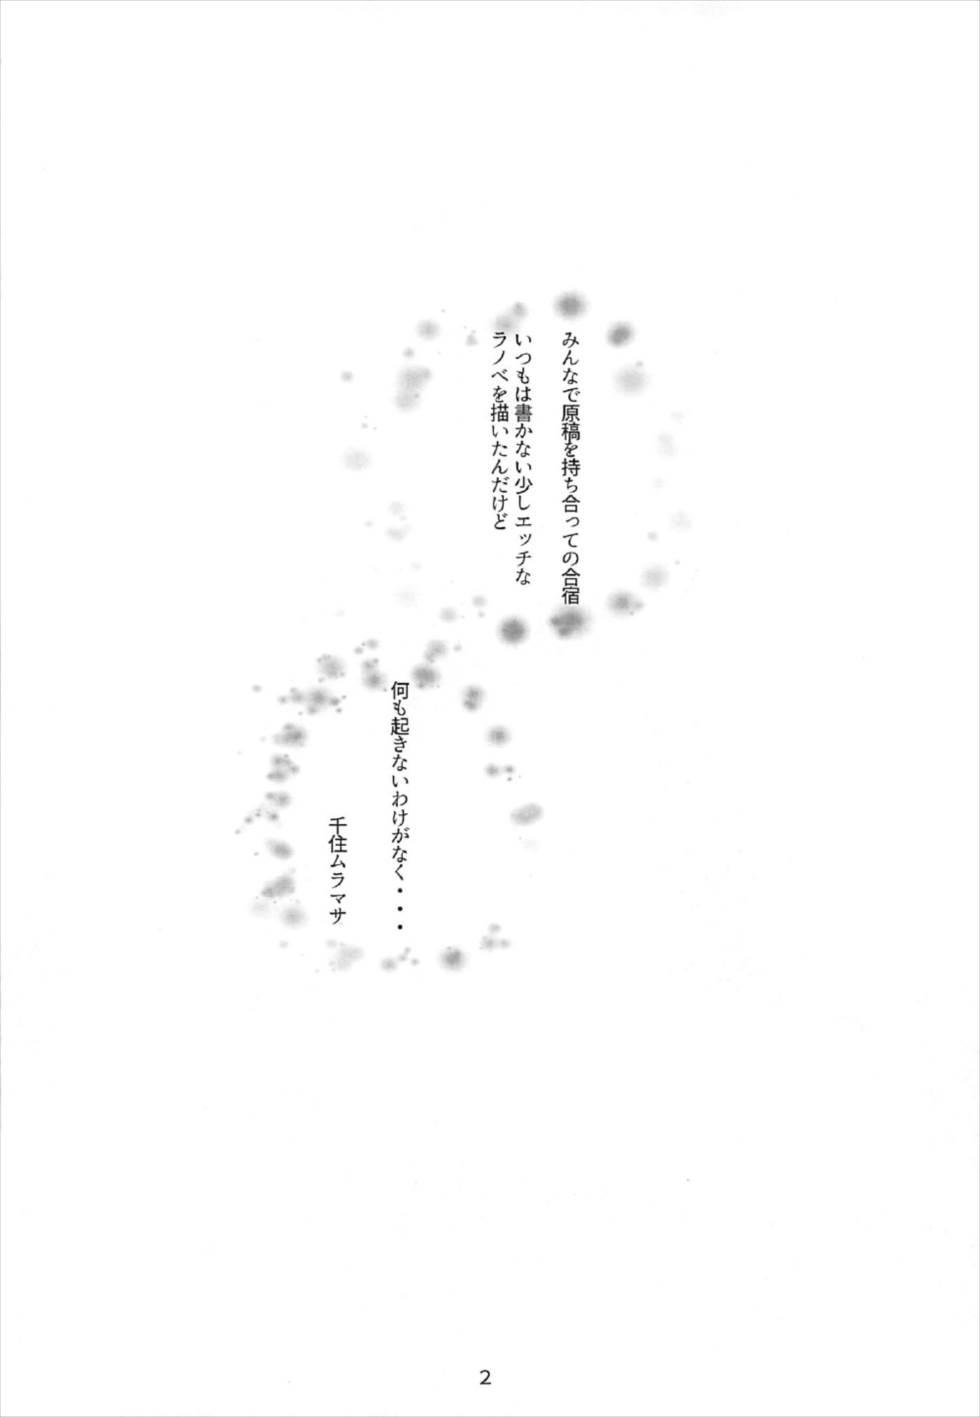 Wrestling Muramasa-senpai no Ero Light Novel Shuzai - Eromanga sensei Group - Page 3